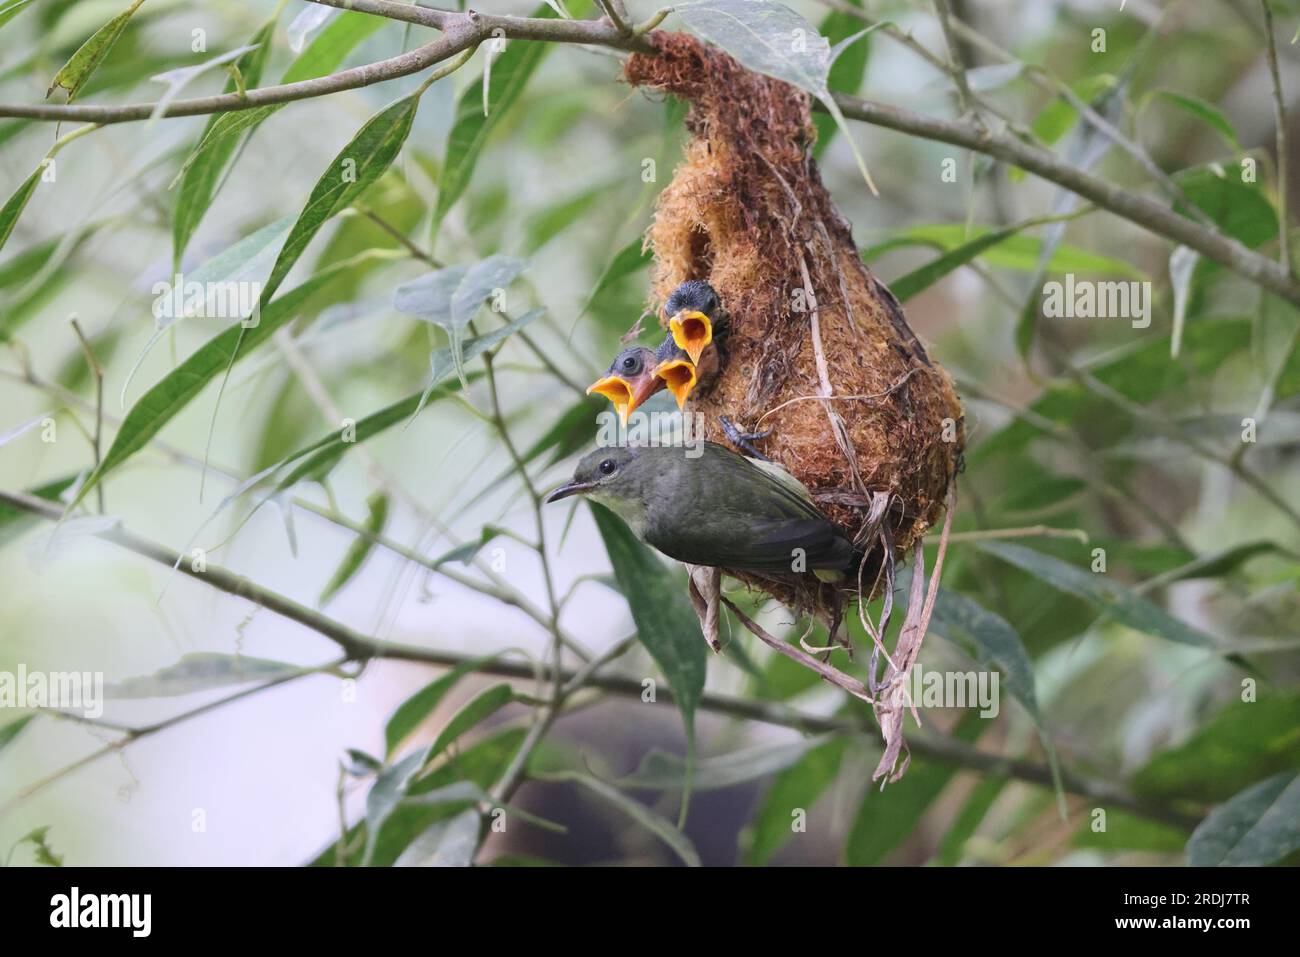 Il picchio di fiori con il becco d'arancio (Dicaeum trigonostigma) è una specie di uccello della famiglia Dicaeidae. Questa foto è stata scattata nell'isola di Luzon, nelle Filippine Foto Stock